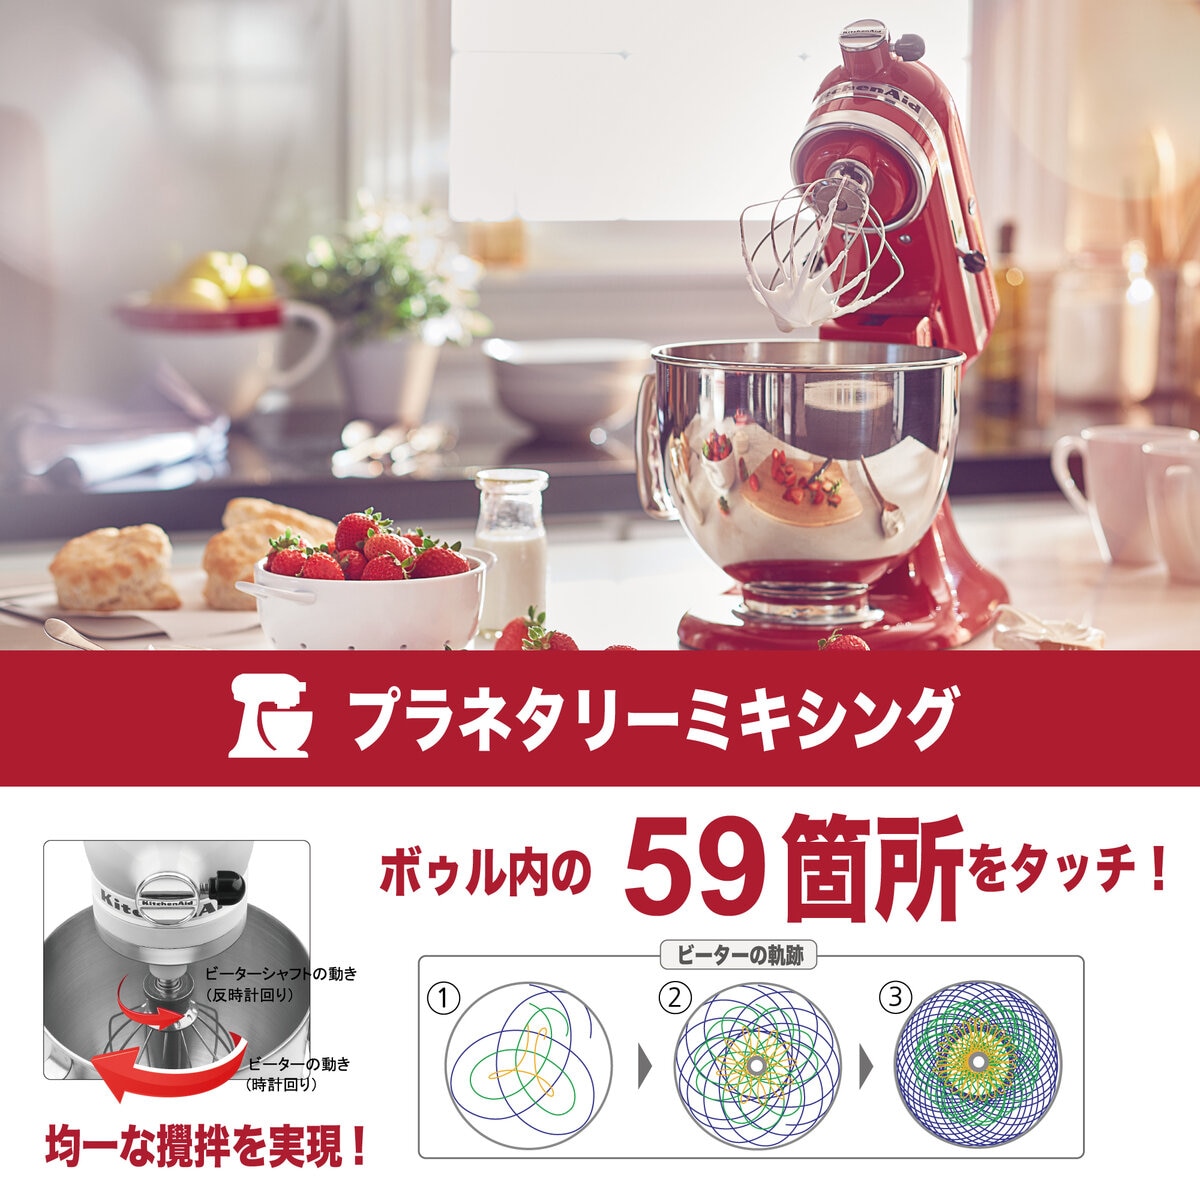 【新品・未開封】キッチンエイド アルチザン スタンドミキサー 4.8L レッド